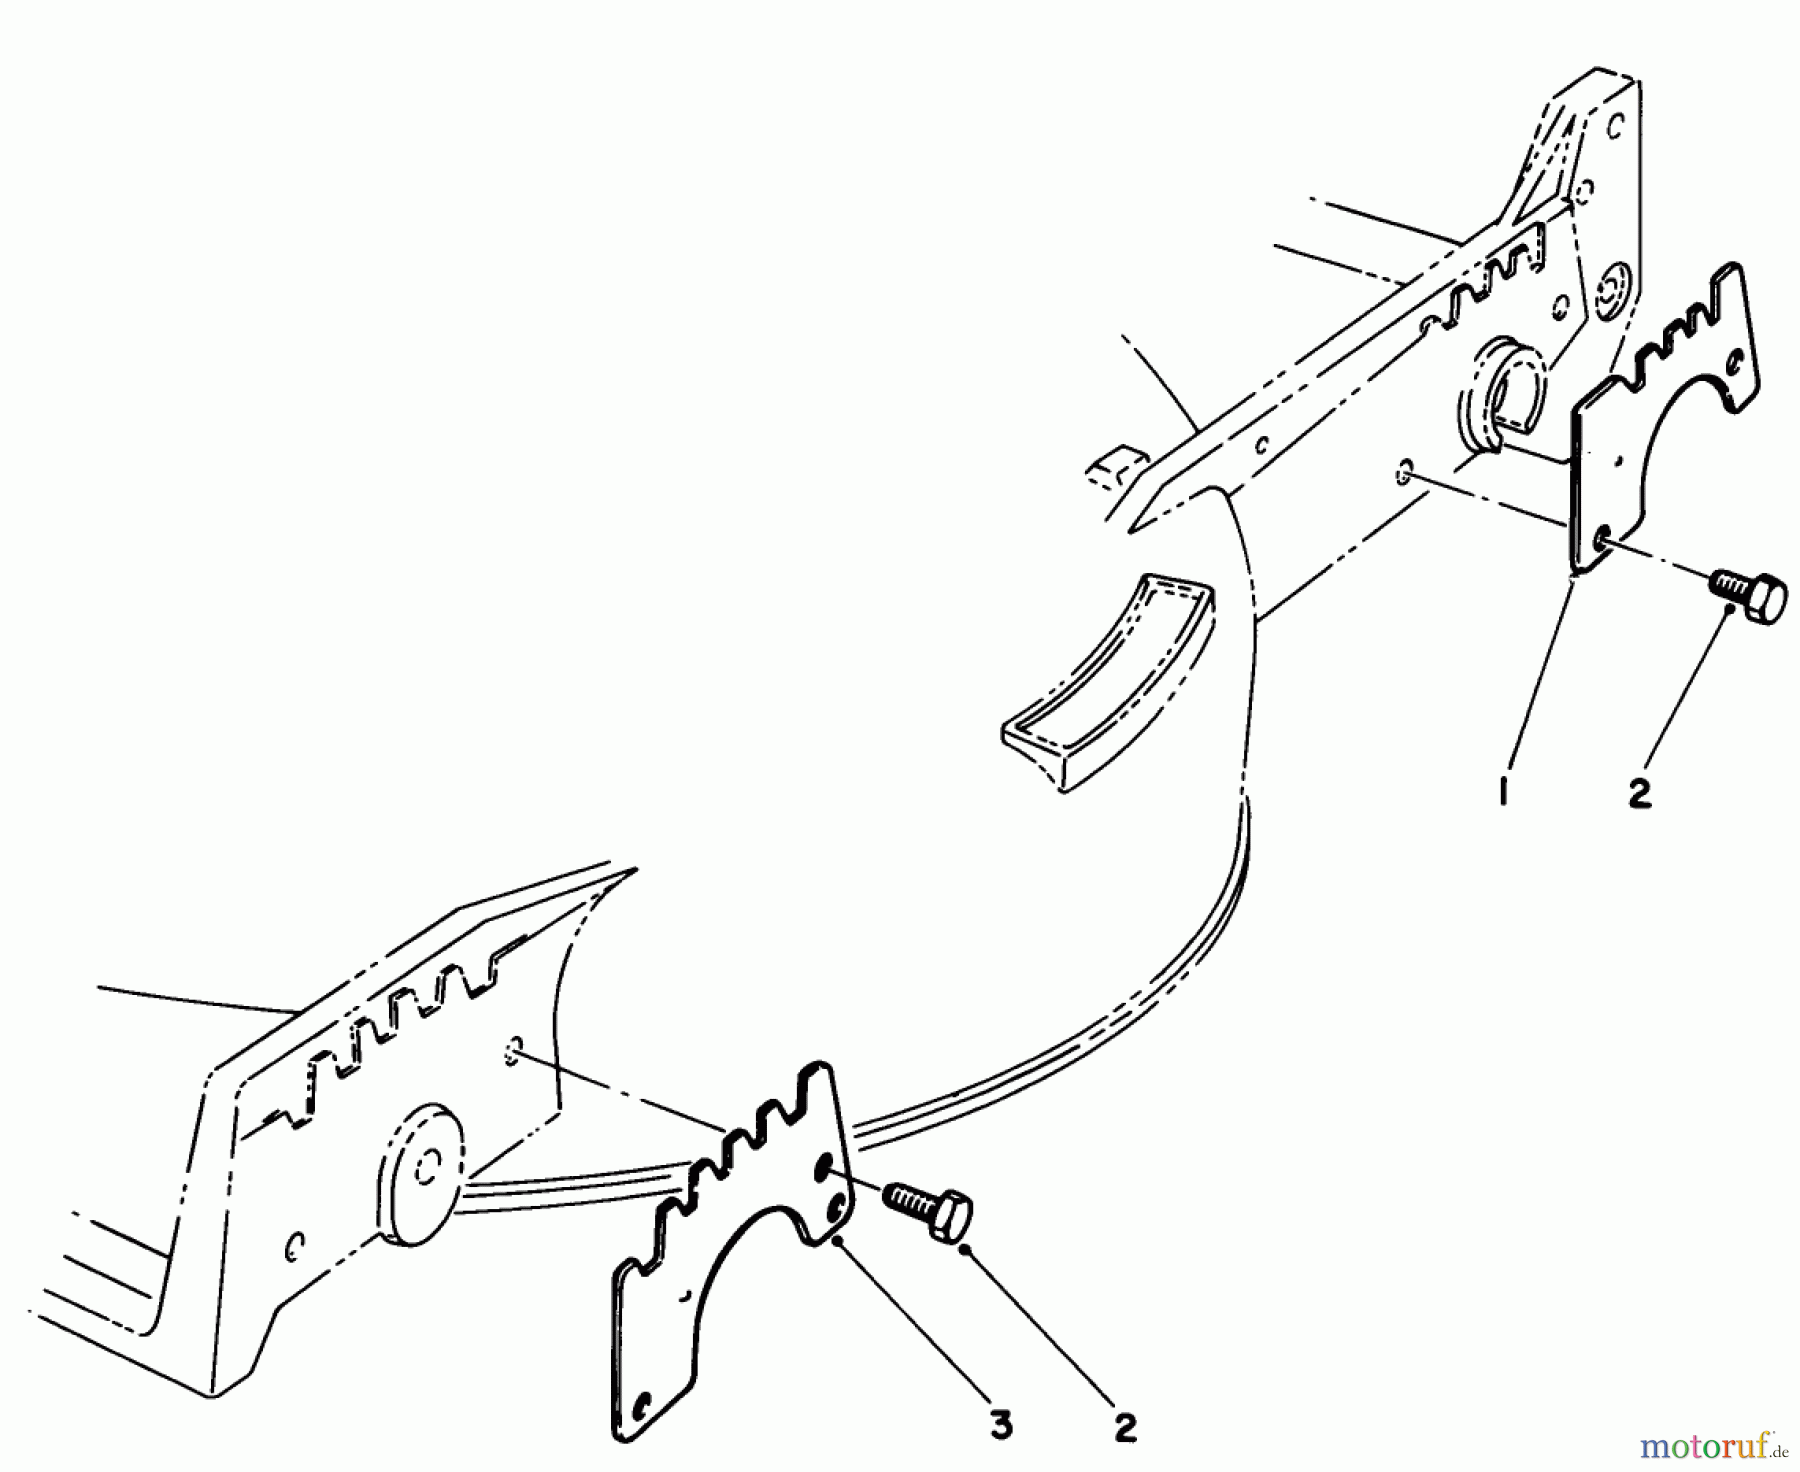  Toro Neu Mowers, Walk-Behind Seite 1 20684 - Toro Lawnmower, 1987 (7000001-7999999) WEAR PLATE KIT NO. 49-4080 (OPTIONAL)